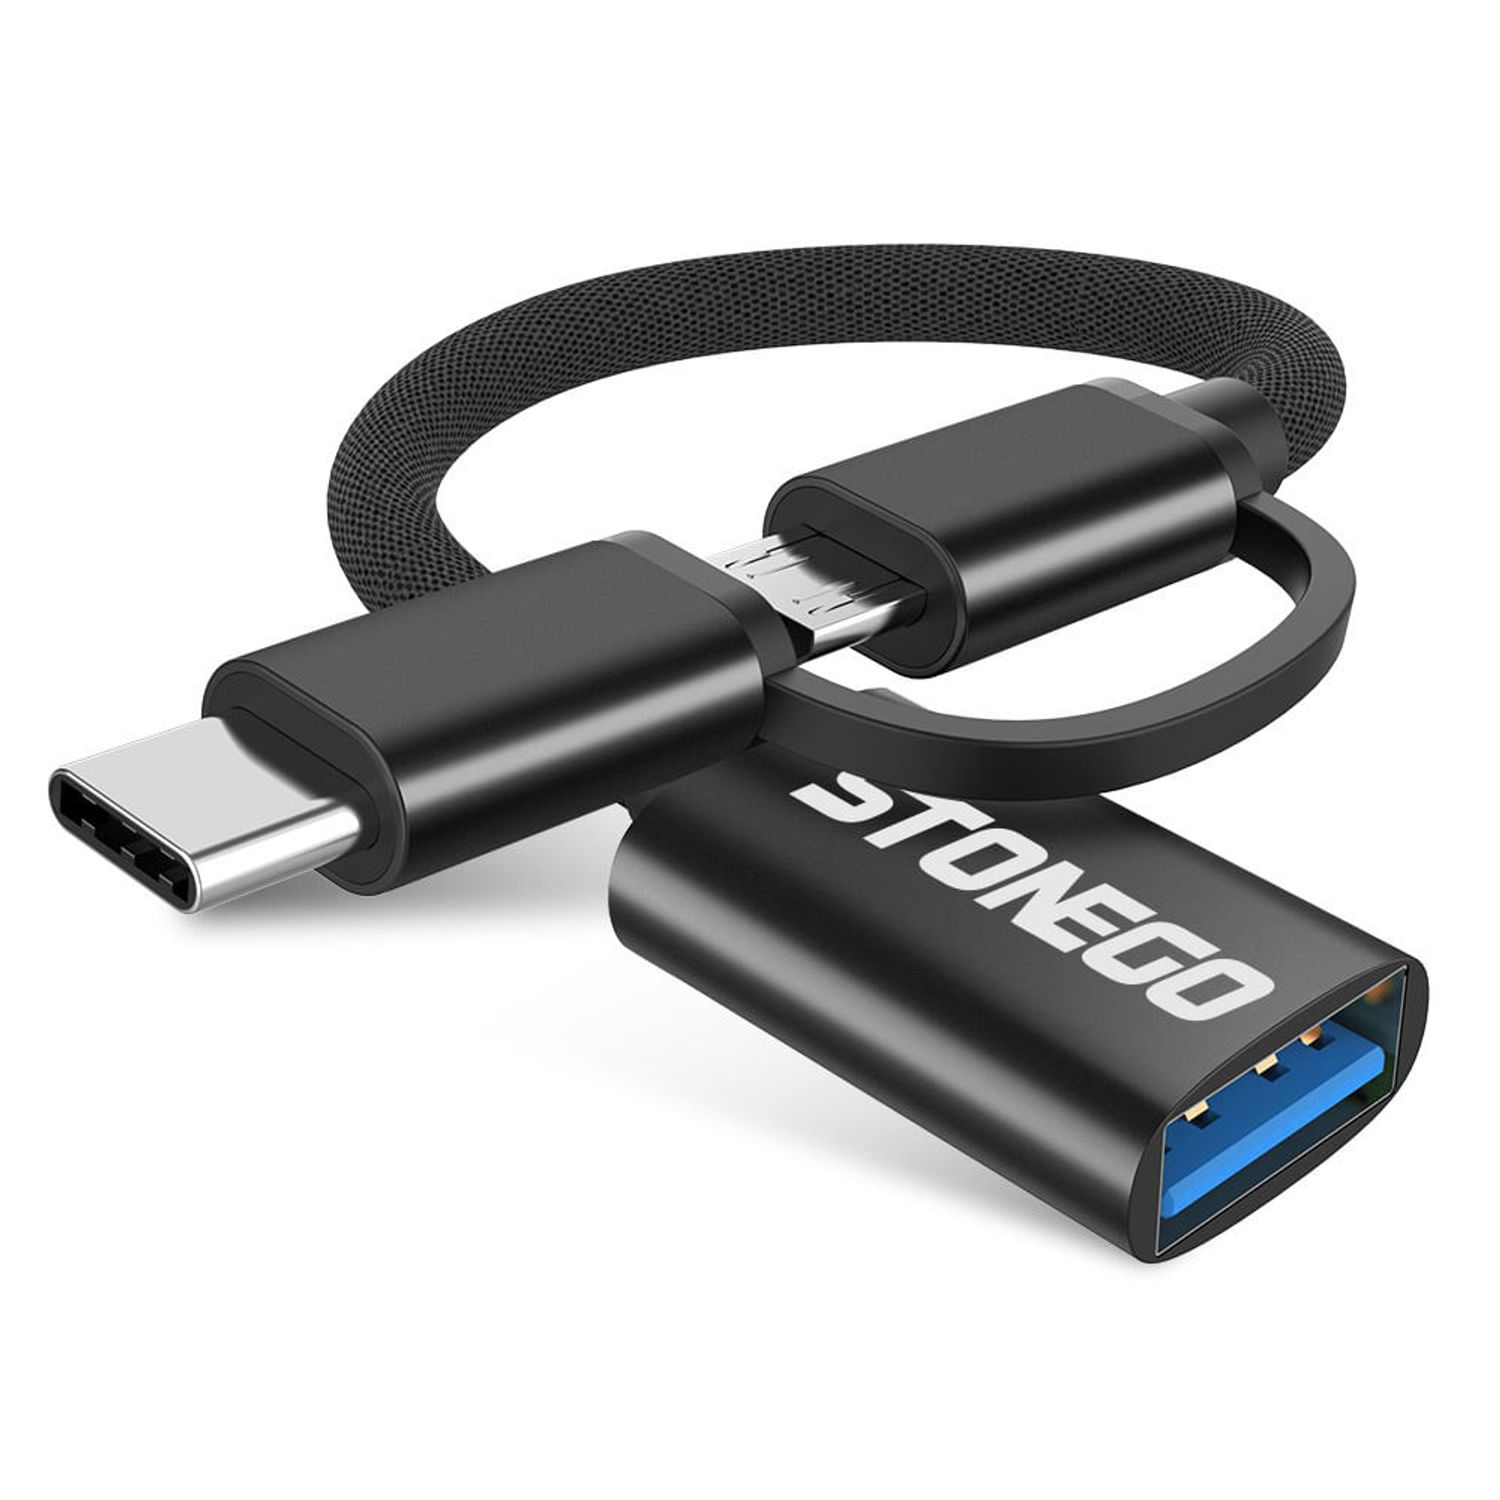 Adaptador USB C Macho a USB 3.0 Hembra Tipo C Cable OTG